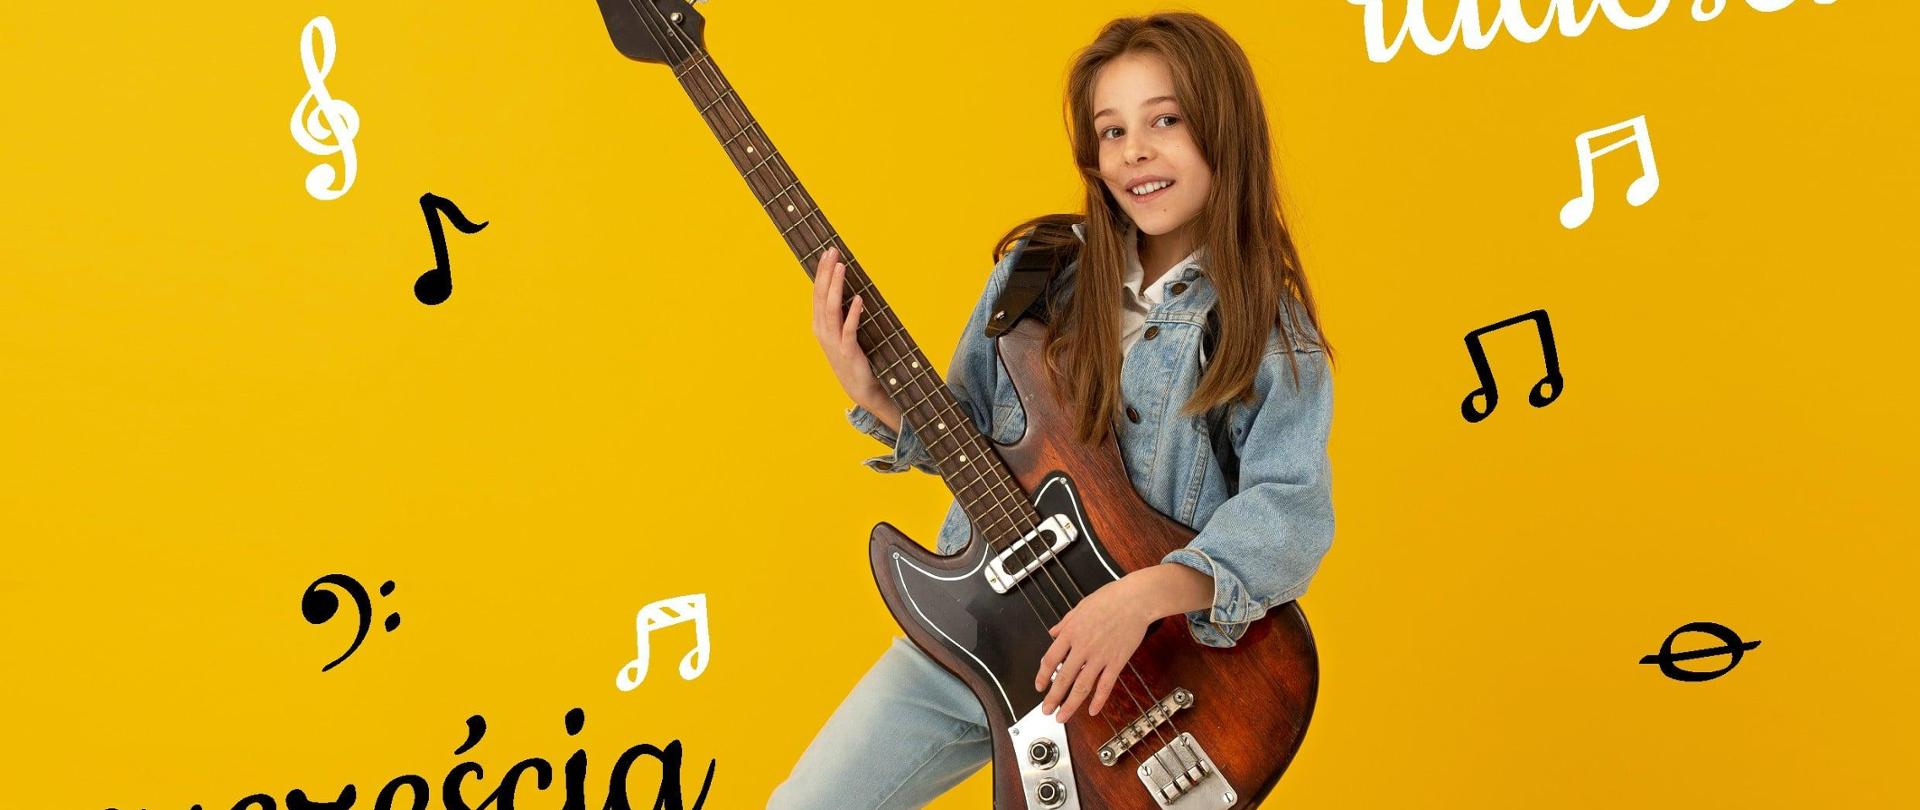 Plakat w kolorze żółtym, zdjęcie dziewczyny z gitarą. Napis: uśmiechu, radości, szczęścia radości życzy dyrektor Jerzy Suruło wraz z pracownikami PSM. U góry po lewej logo szkoły.